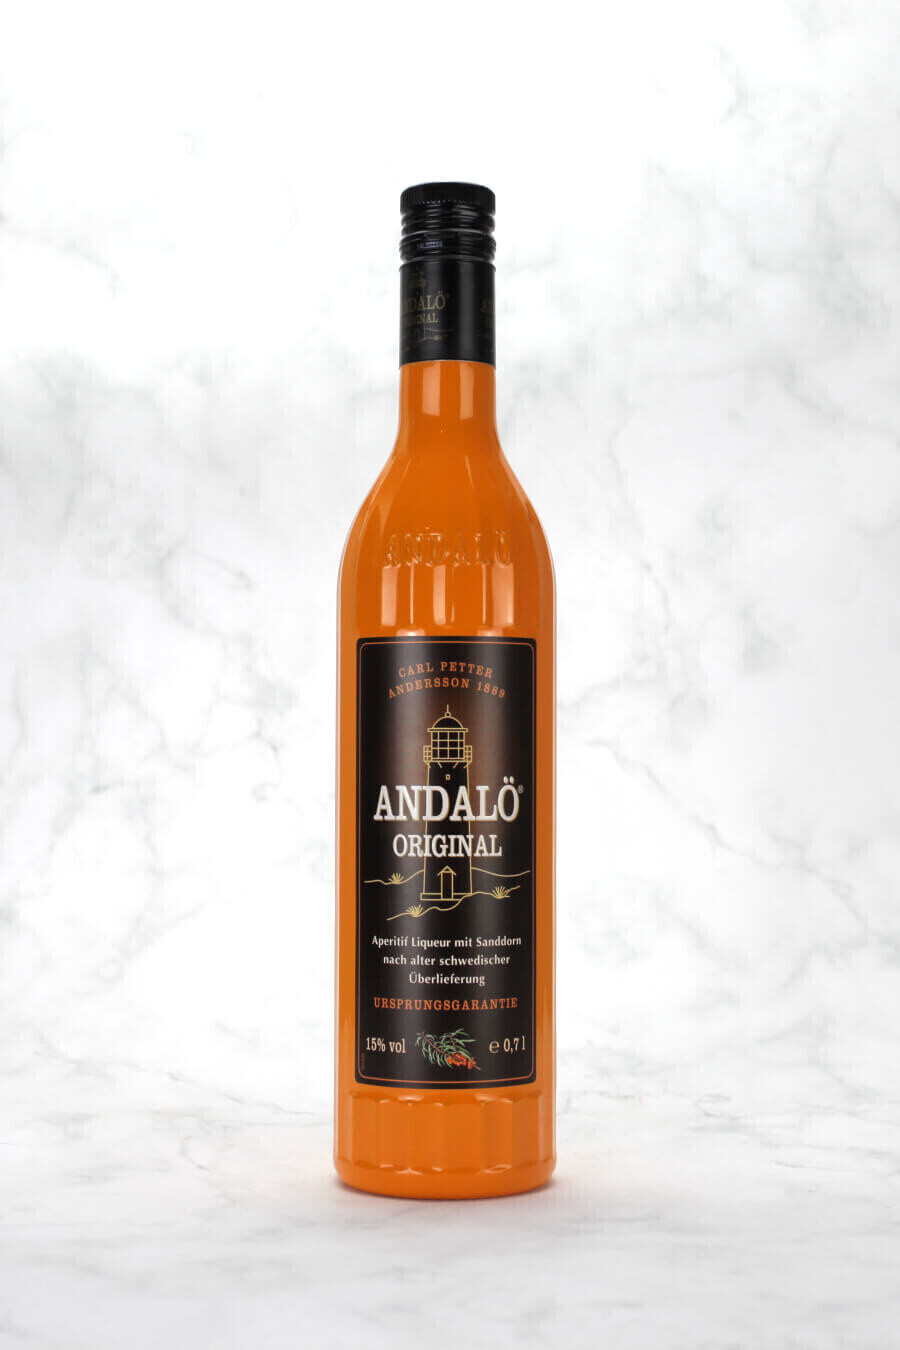 Andalö Original Sanddorn Liqueur 15% a | € 18,93 0,7l (oggi) e su Migliori idealo prezzi offerte